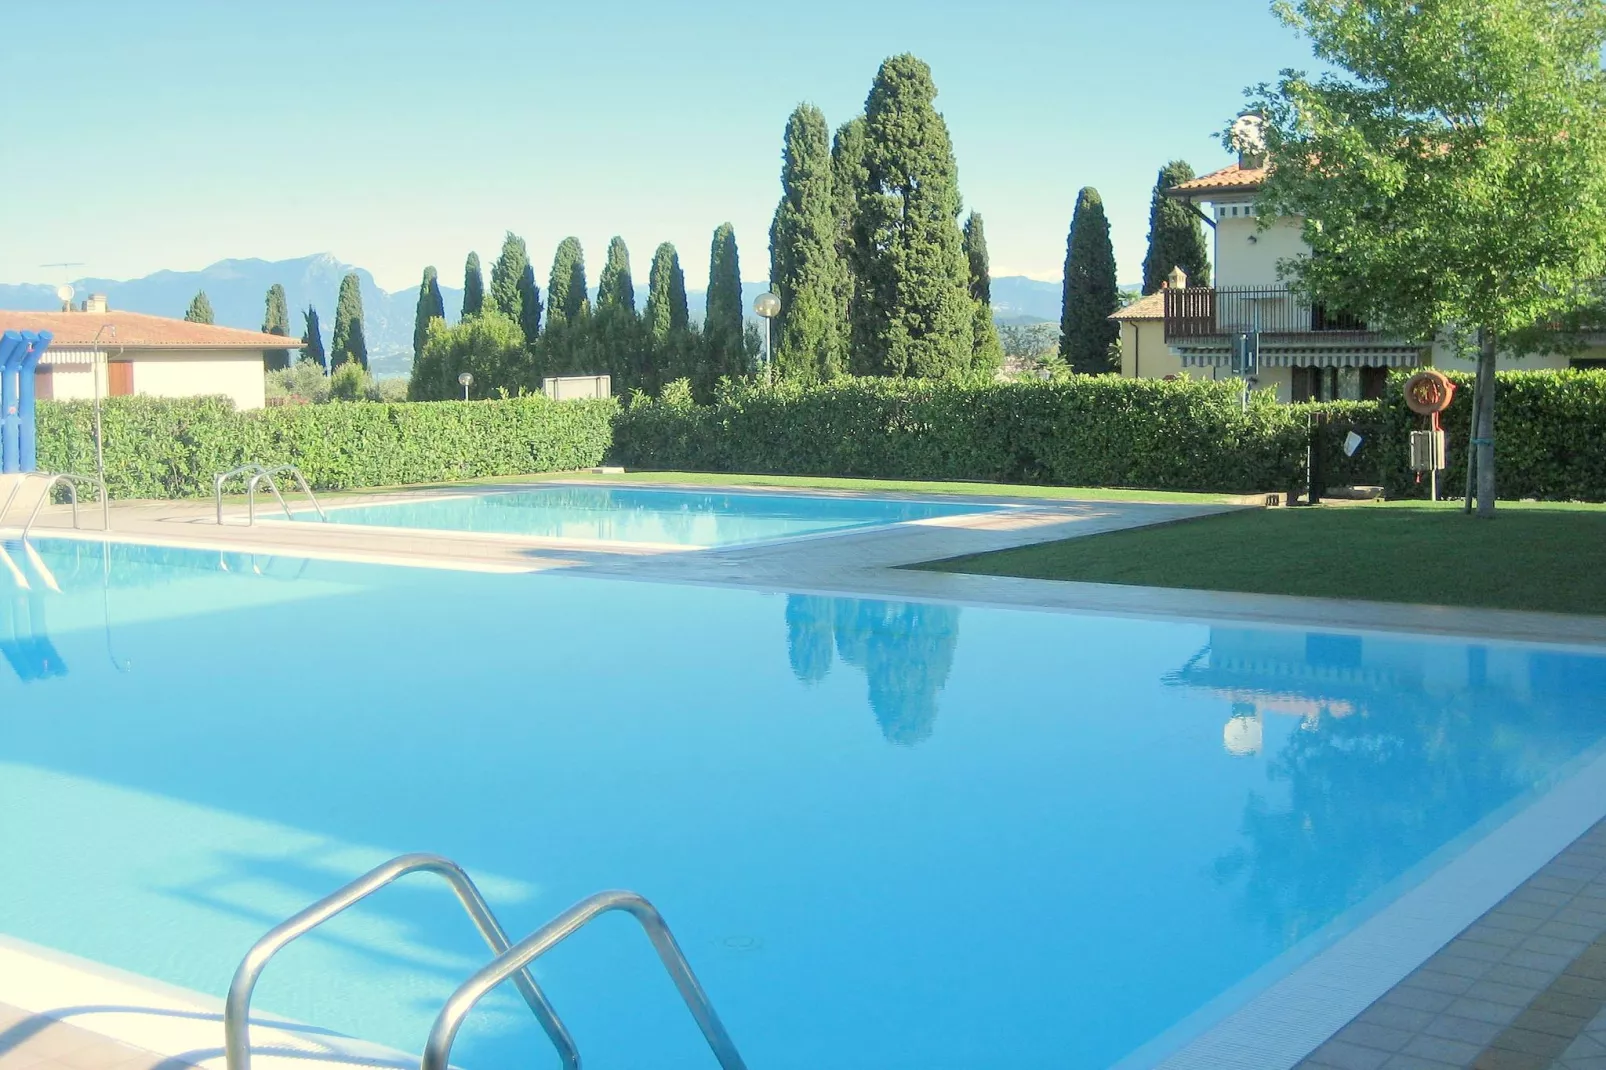 Mooie residentie met 2 zwembaden, ideaal voor gezinnen met kinderen-Zwembad